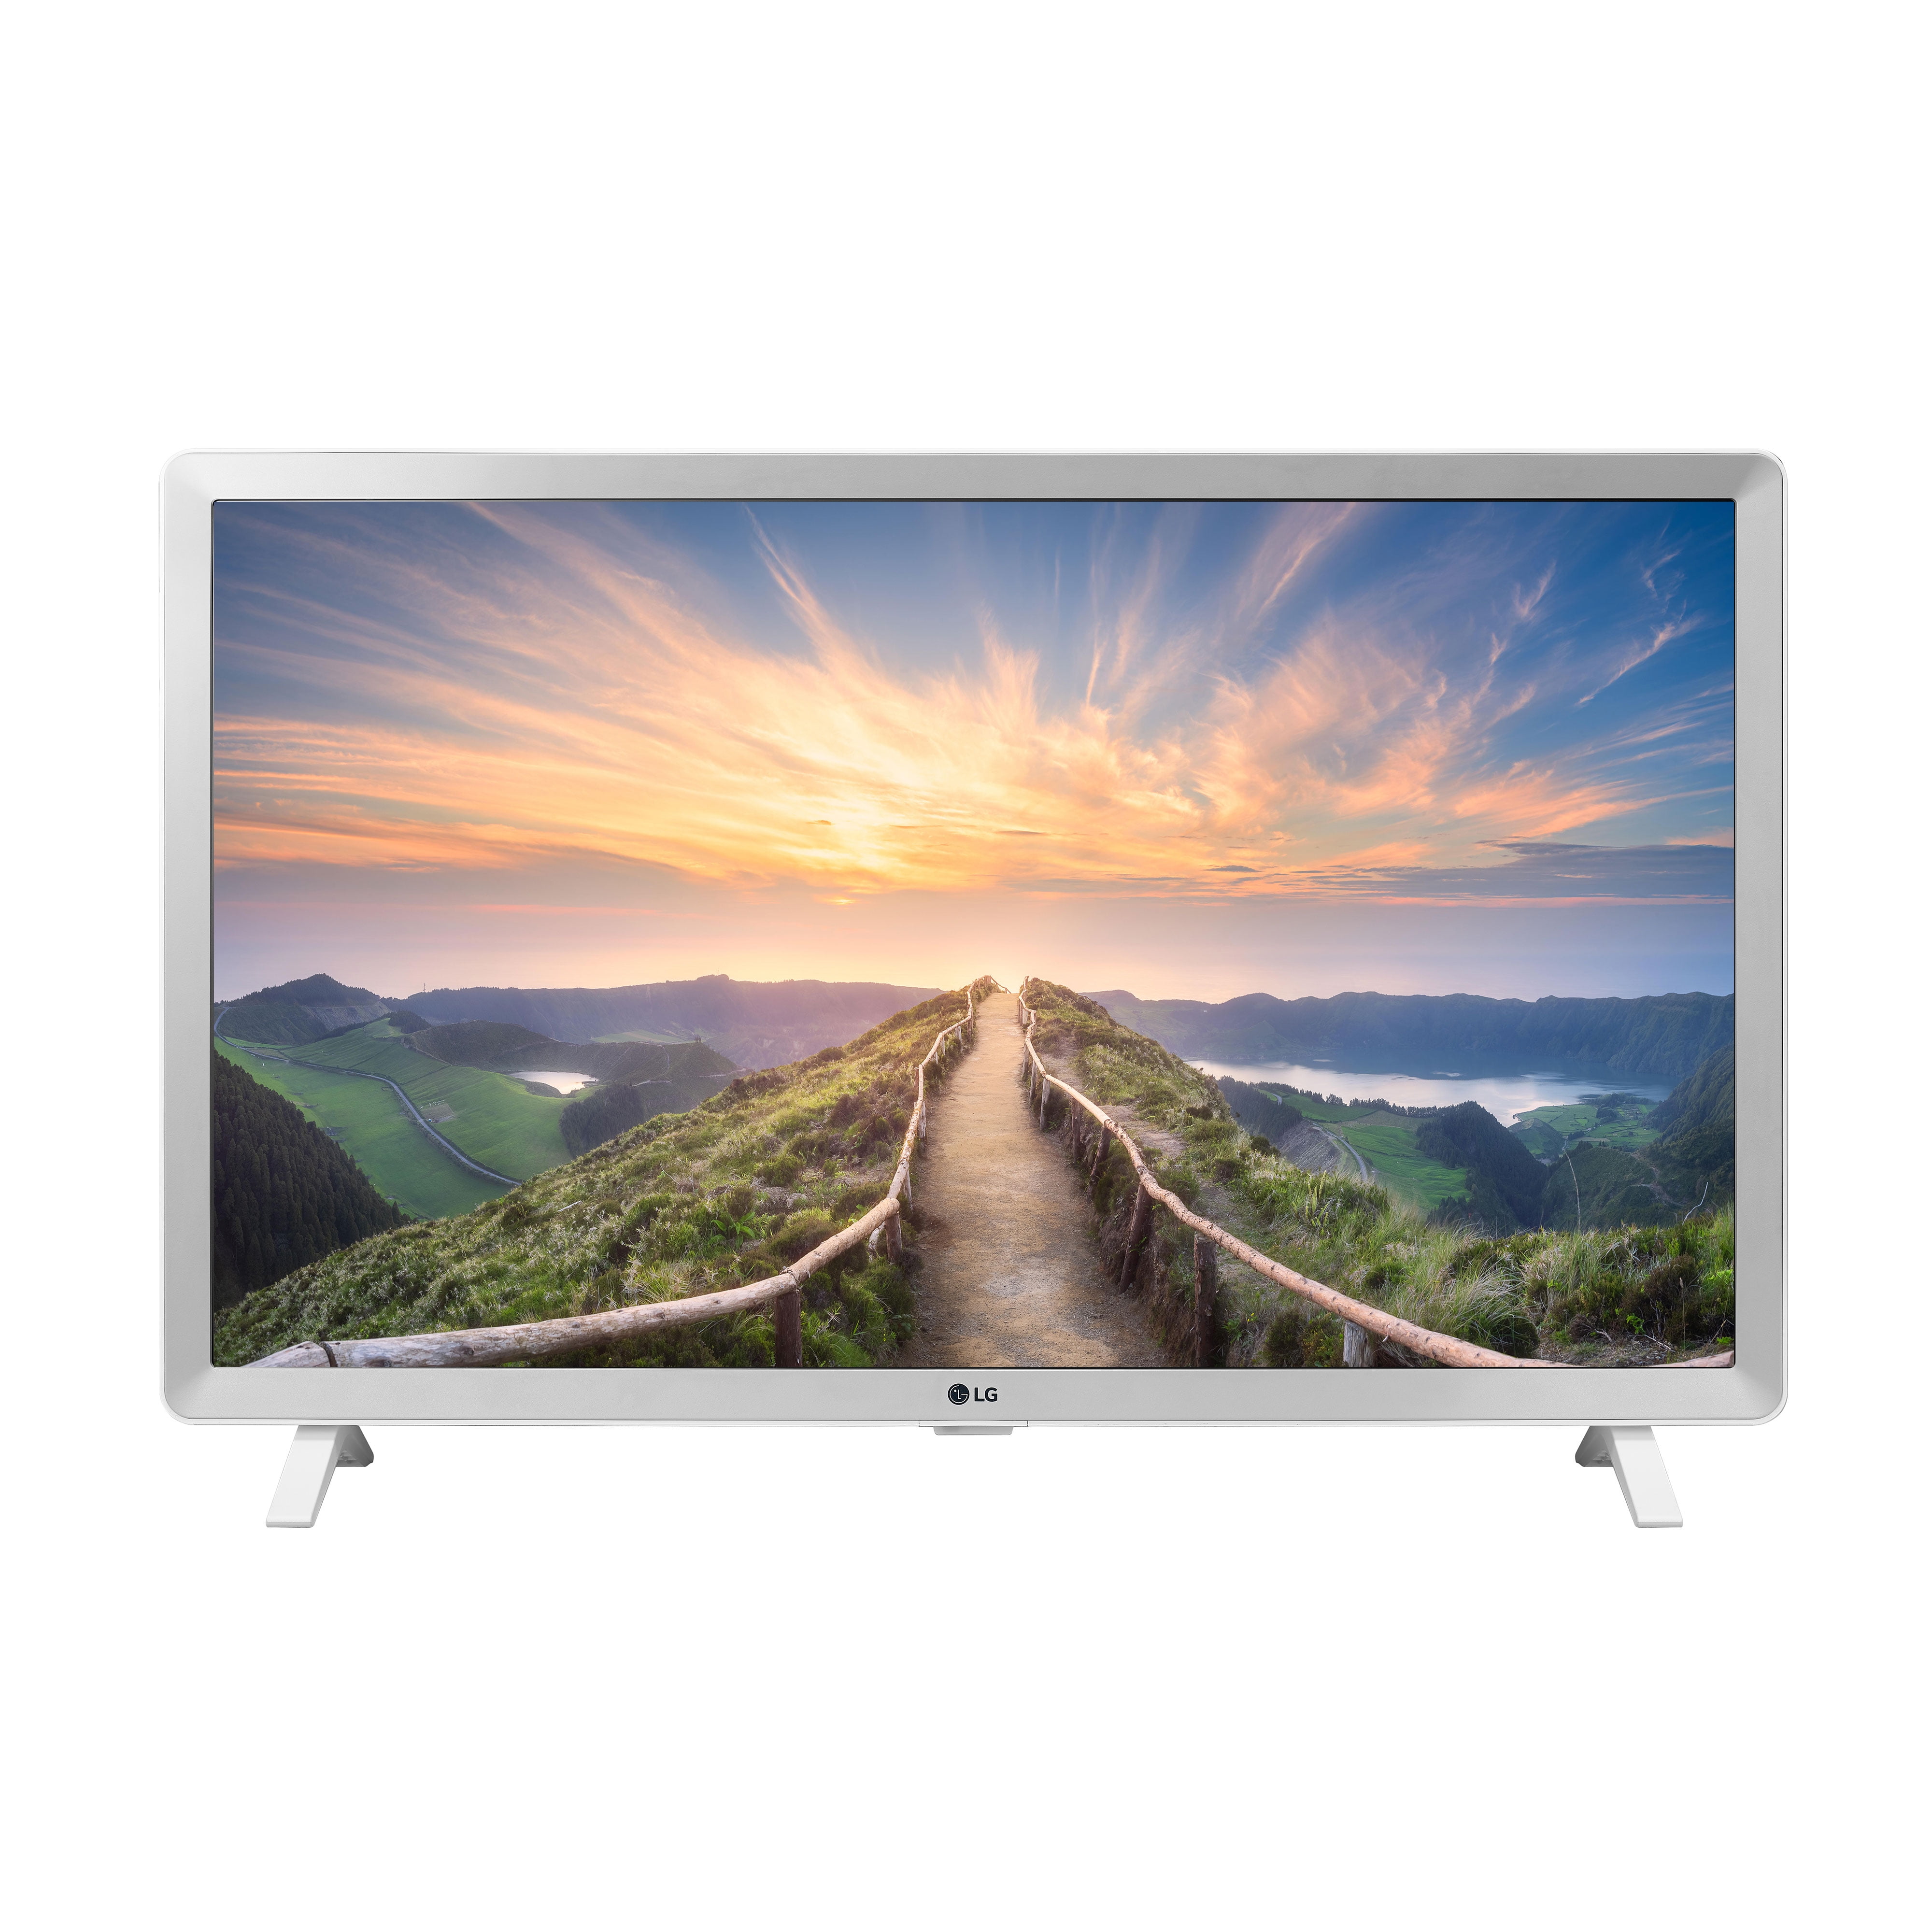 Купить телевизор со смарт тв в москве. Телевизор LG Smart TV 32 дюйма. Телевизор led 32 LG 32lm550b. LG led 24. Телевизор LG 32 дюйма смарт ТВ.